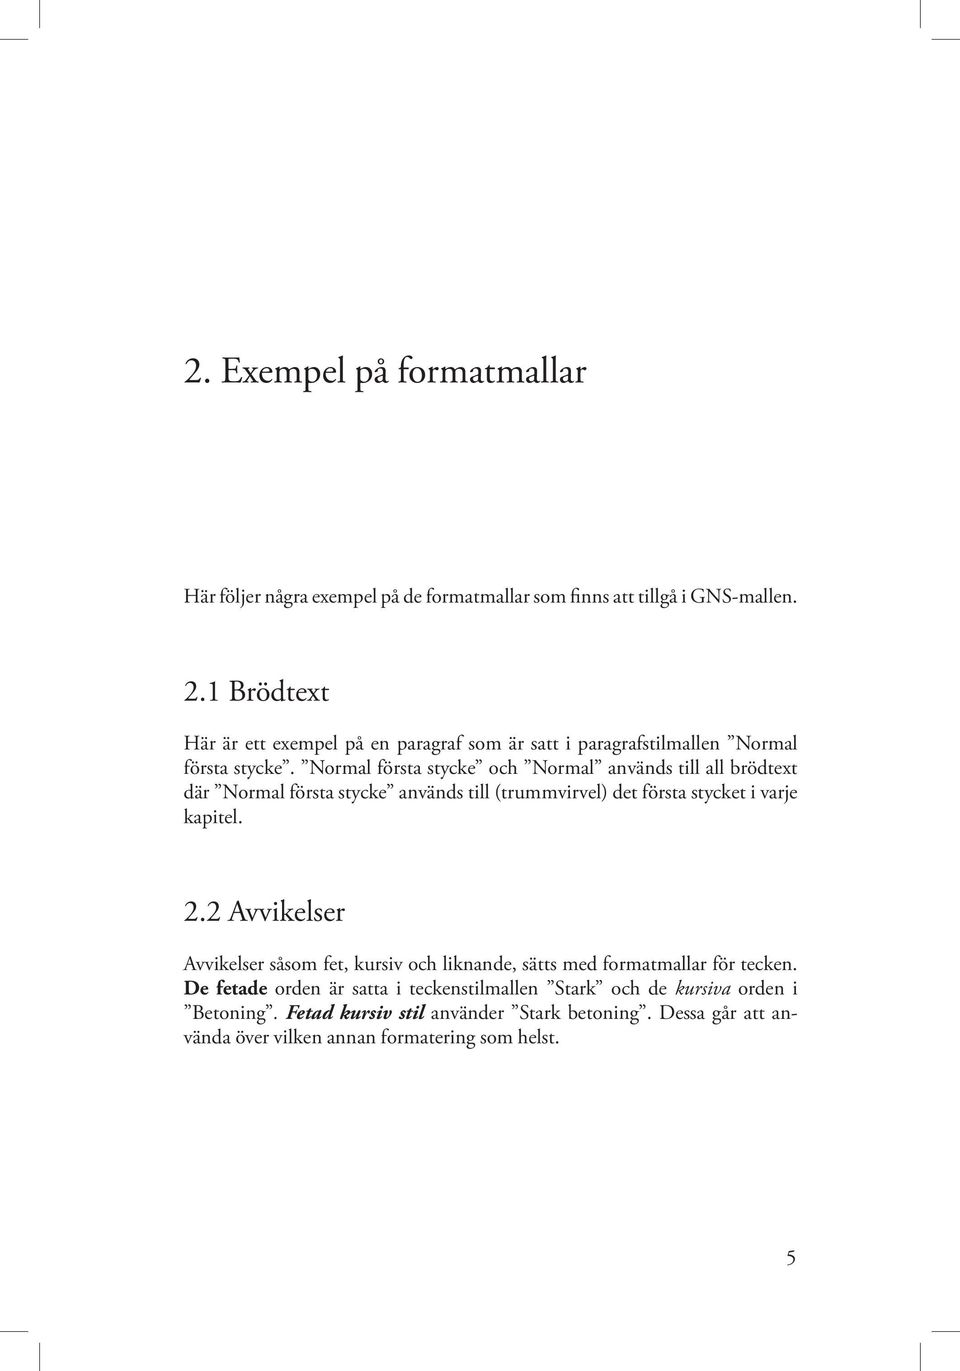 Normal första stycke och Normal används till all brödtext där Normal första stycke används till (trummvirvel) det första stycket i varje kapitel. 2.